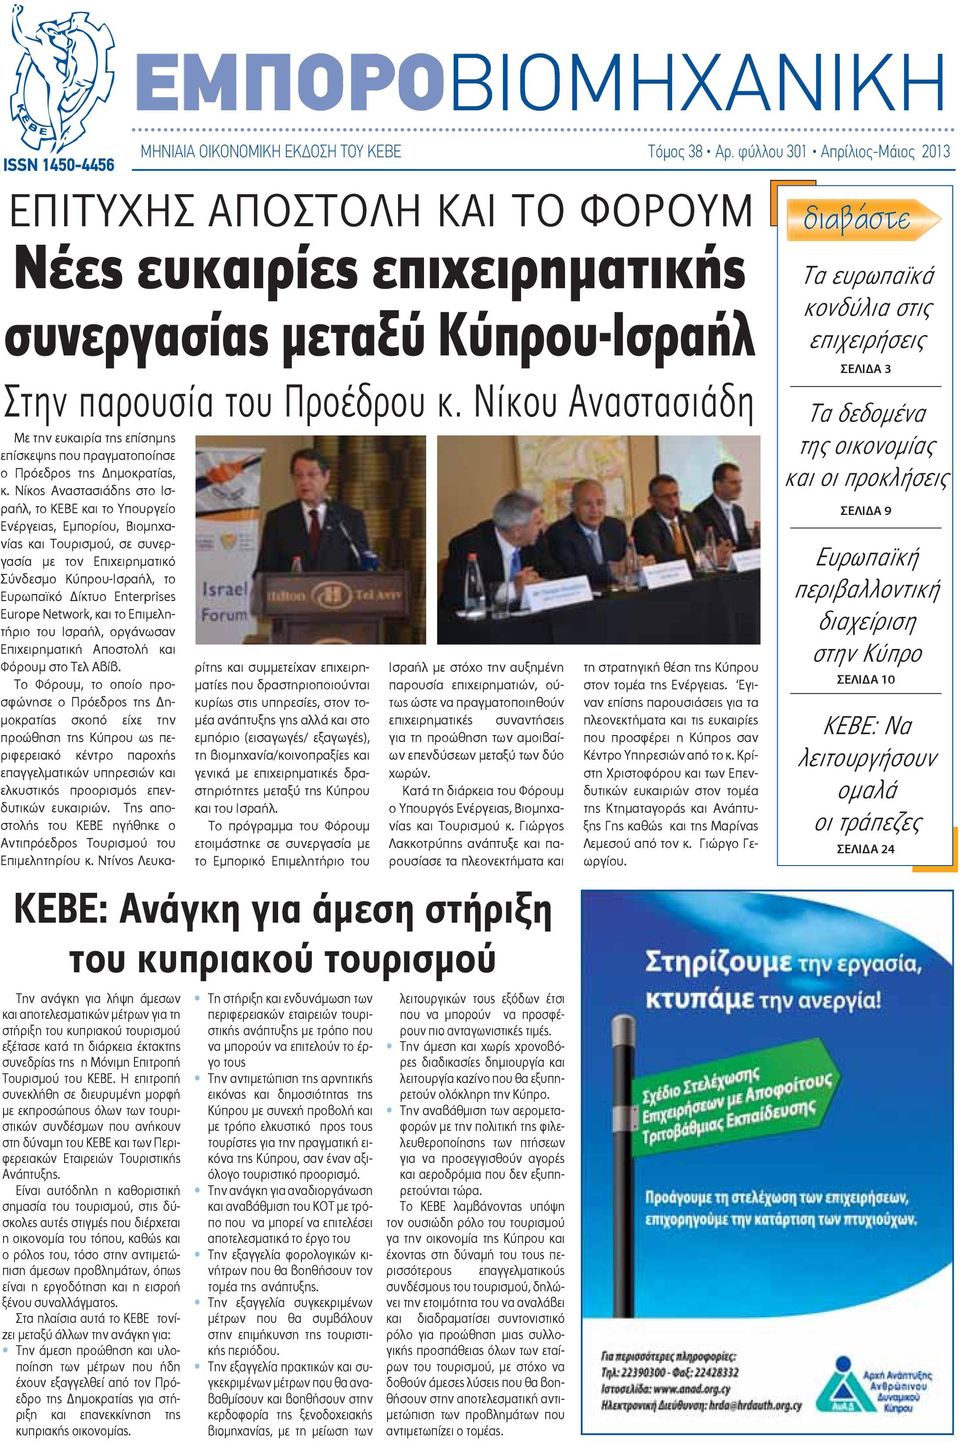 Νίκου Αναστασιάδη Την ανάγκη για λήψη άμεσων και αποτελεσματικών μέτρων για τη στήριξη του κυπριακού τουρισμού εξέτασε κατά τη διάρκεια έκτακτης συνεδρίας της η Μόνιμη Επιτροπή Τουρισμού του ΚΕΒΕ.